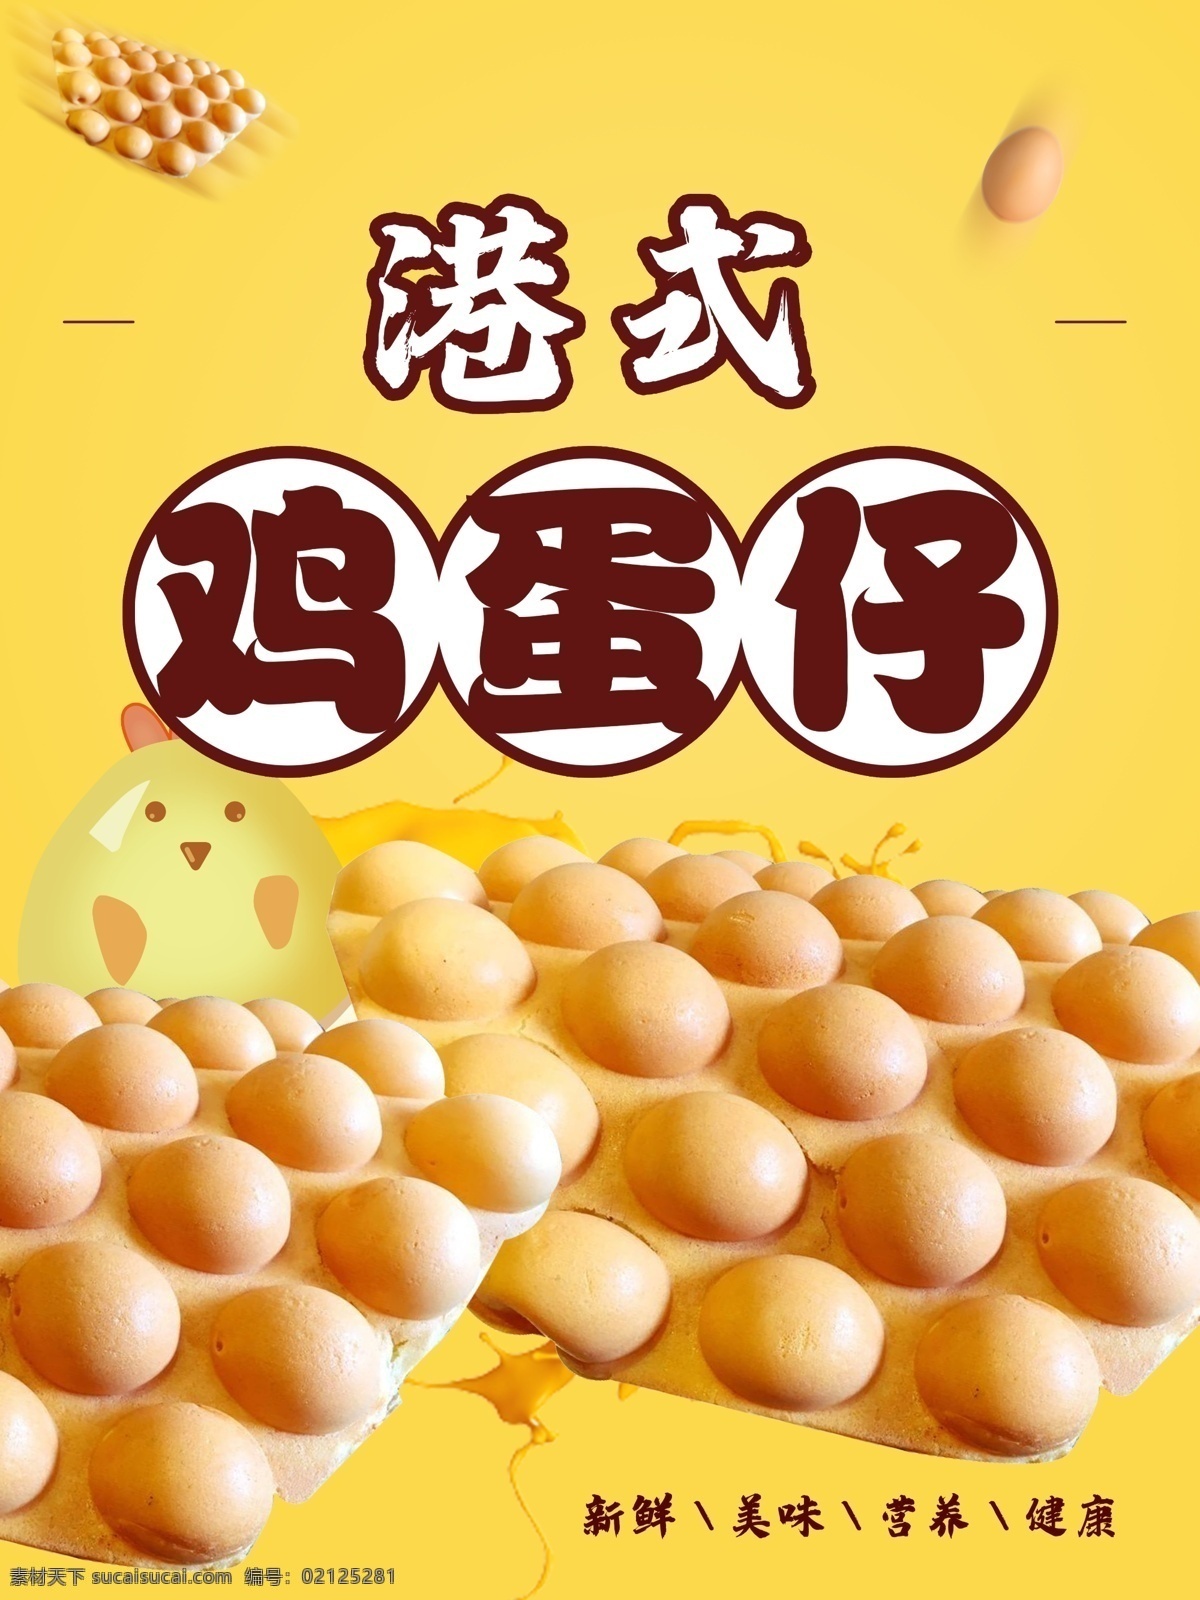 鸡蛋仔海报 鸡蛋仔图片 鸡蛋仔素材 鸡蛋仔图 巧克力鸡蛋仔 原味鸡蛋仔 香港鸡蛋仔 室内广告设计